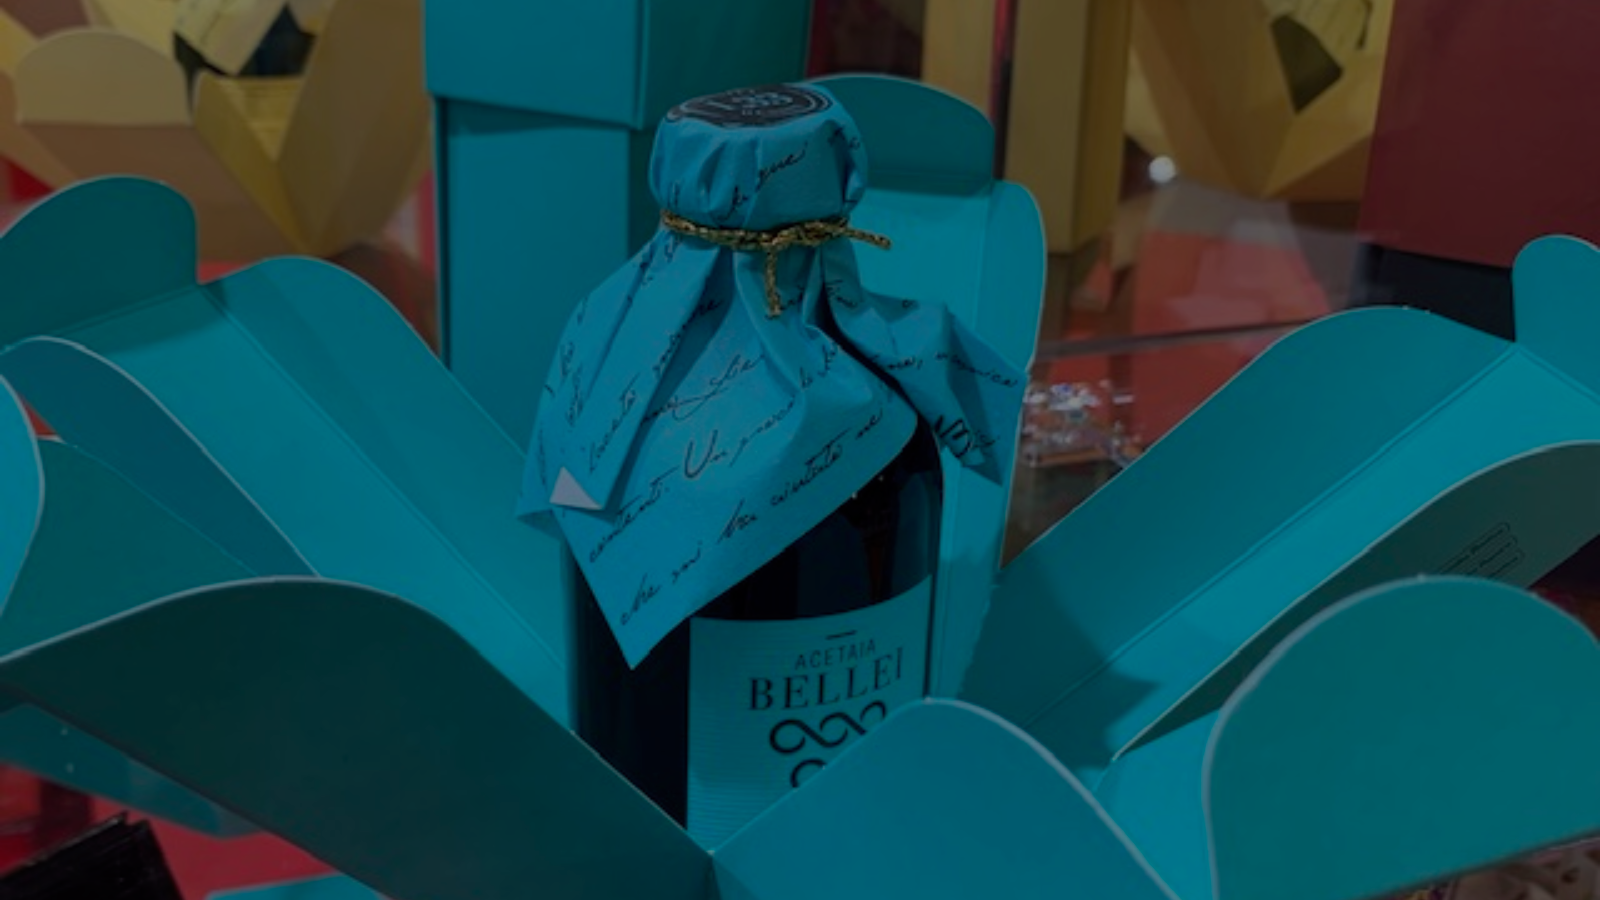 <p>Ideale per la regalistica aziendale, l’aceto balsamico di Modena di Acetaia Bellei è disponibile in gift box in carta, senza punti colla, quindi anche riciclabili</p>
